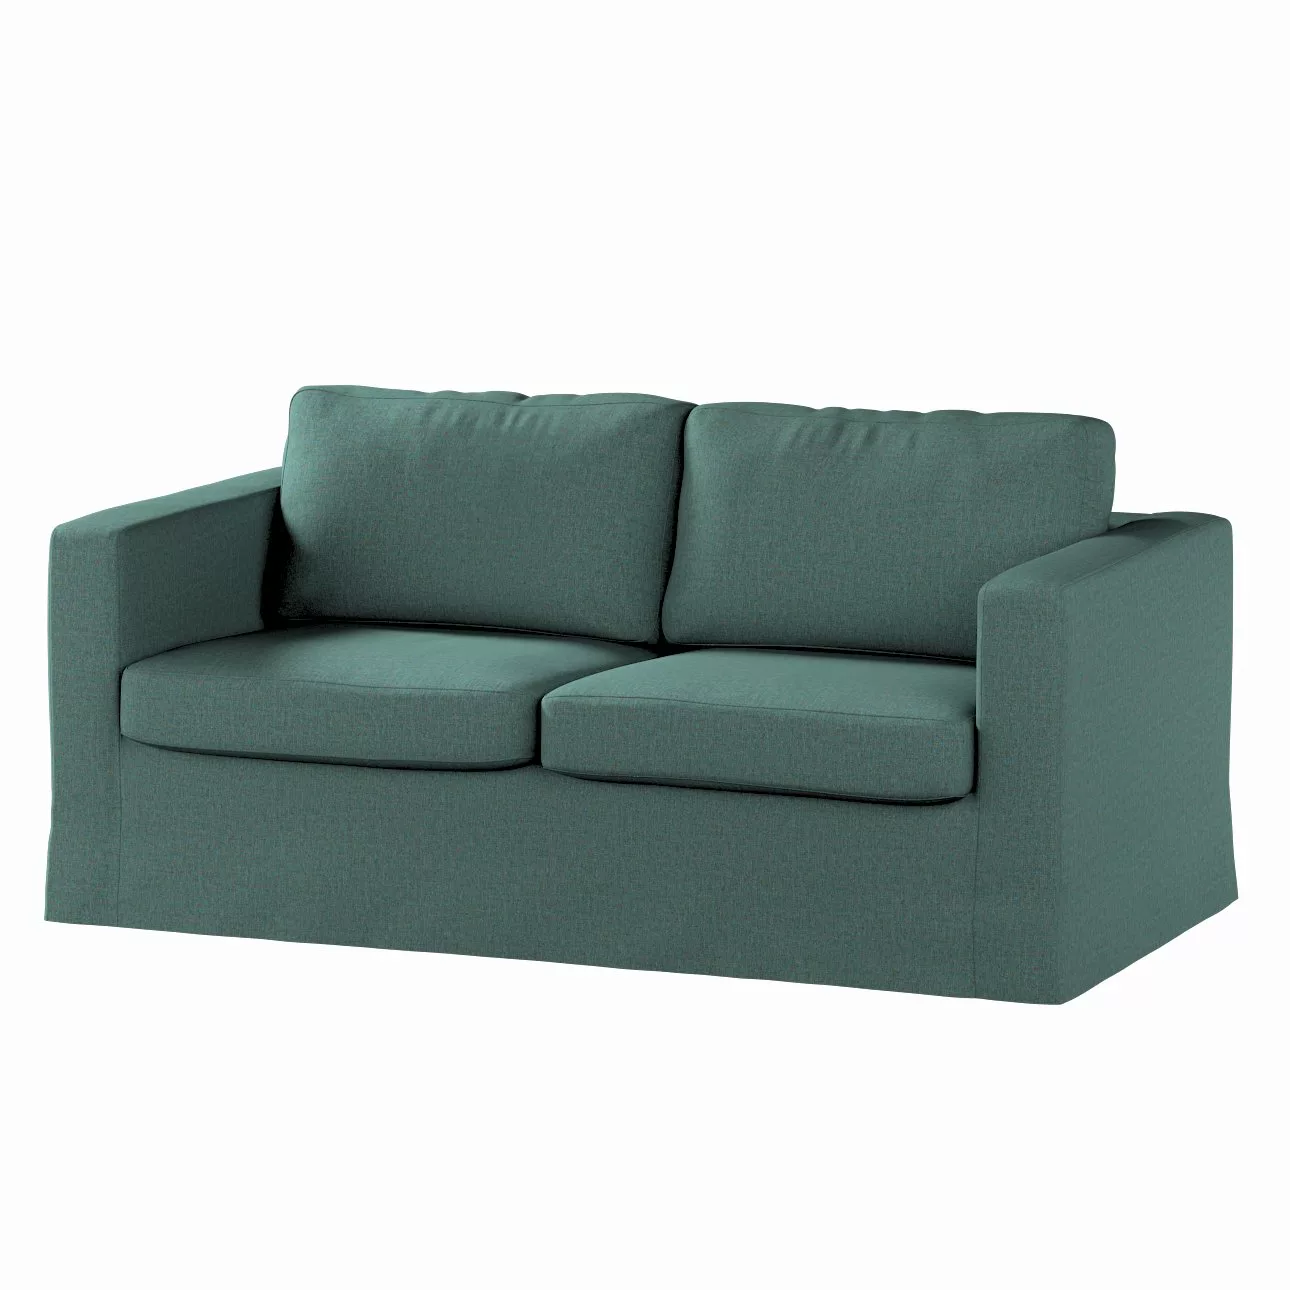 Bezug für Karlstad 2-Sitzer Sofa nicht ausklappbar, lang, türkis, Sofahusse günstig online kaufen